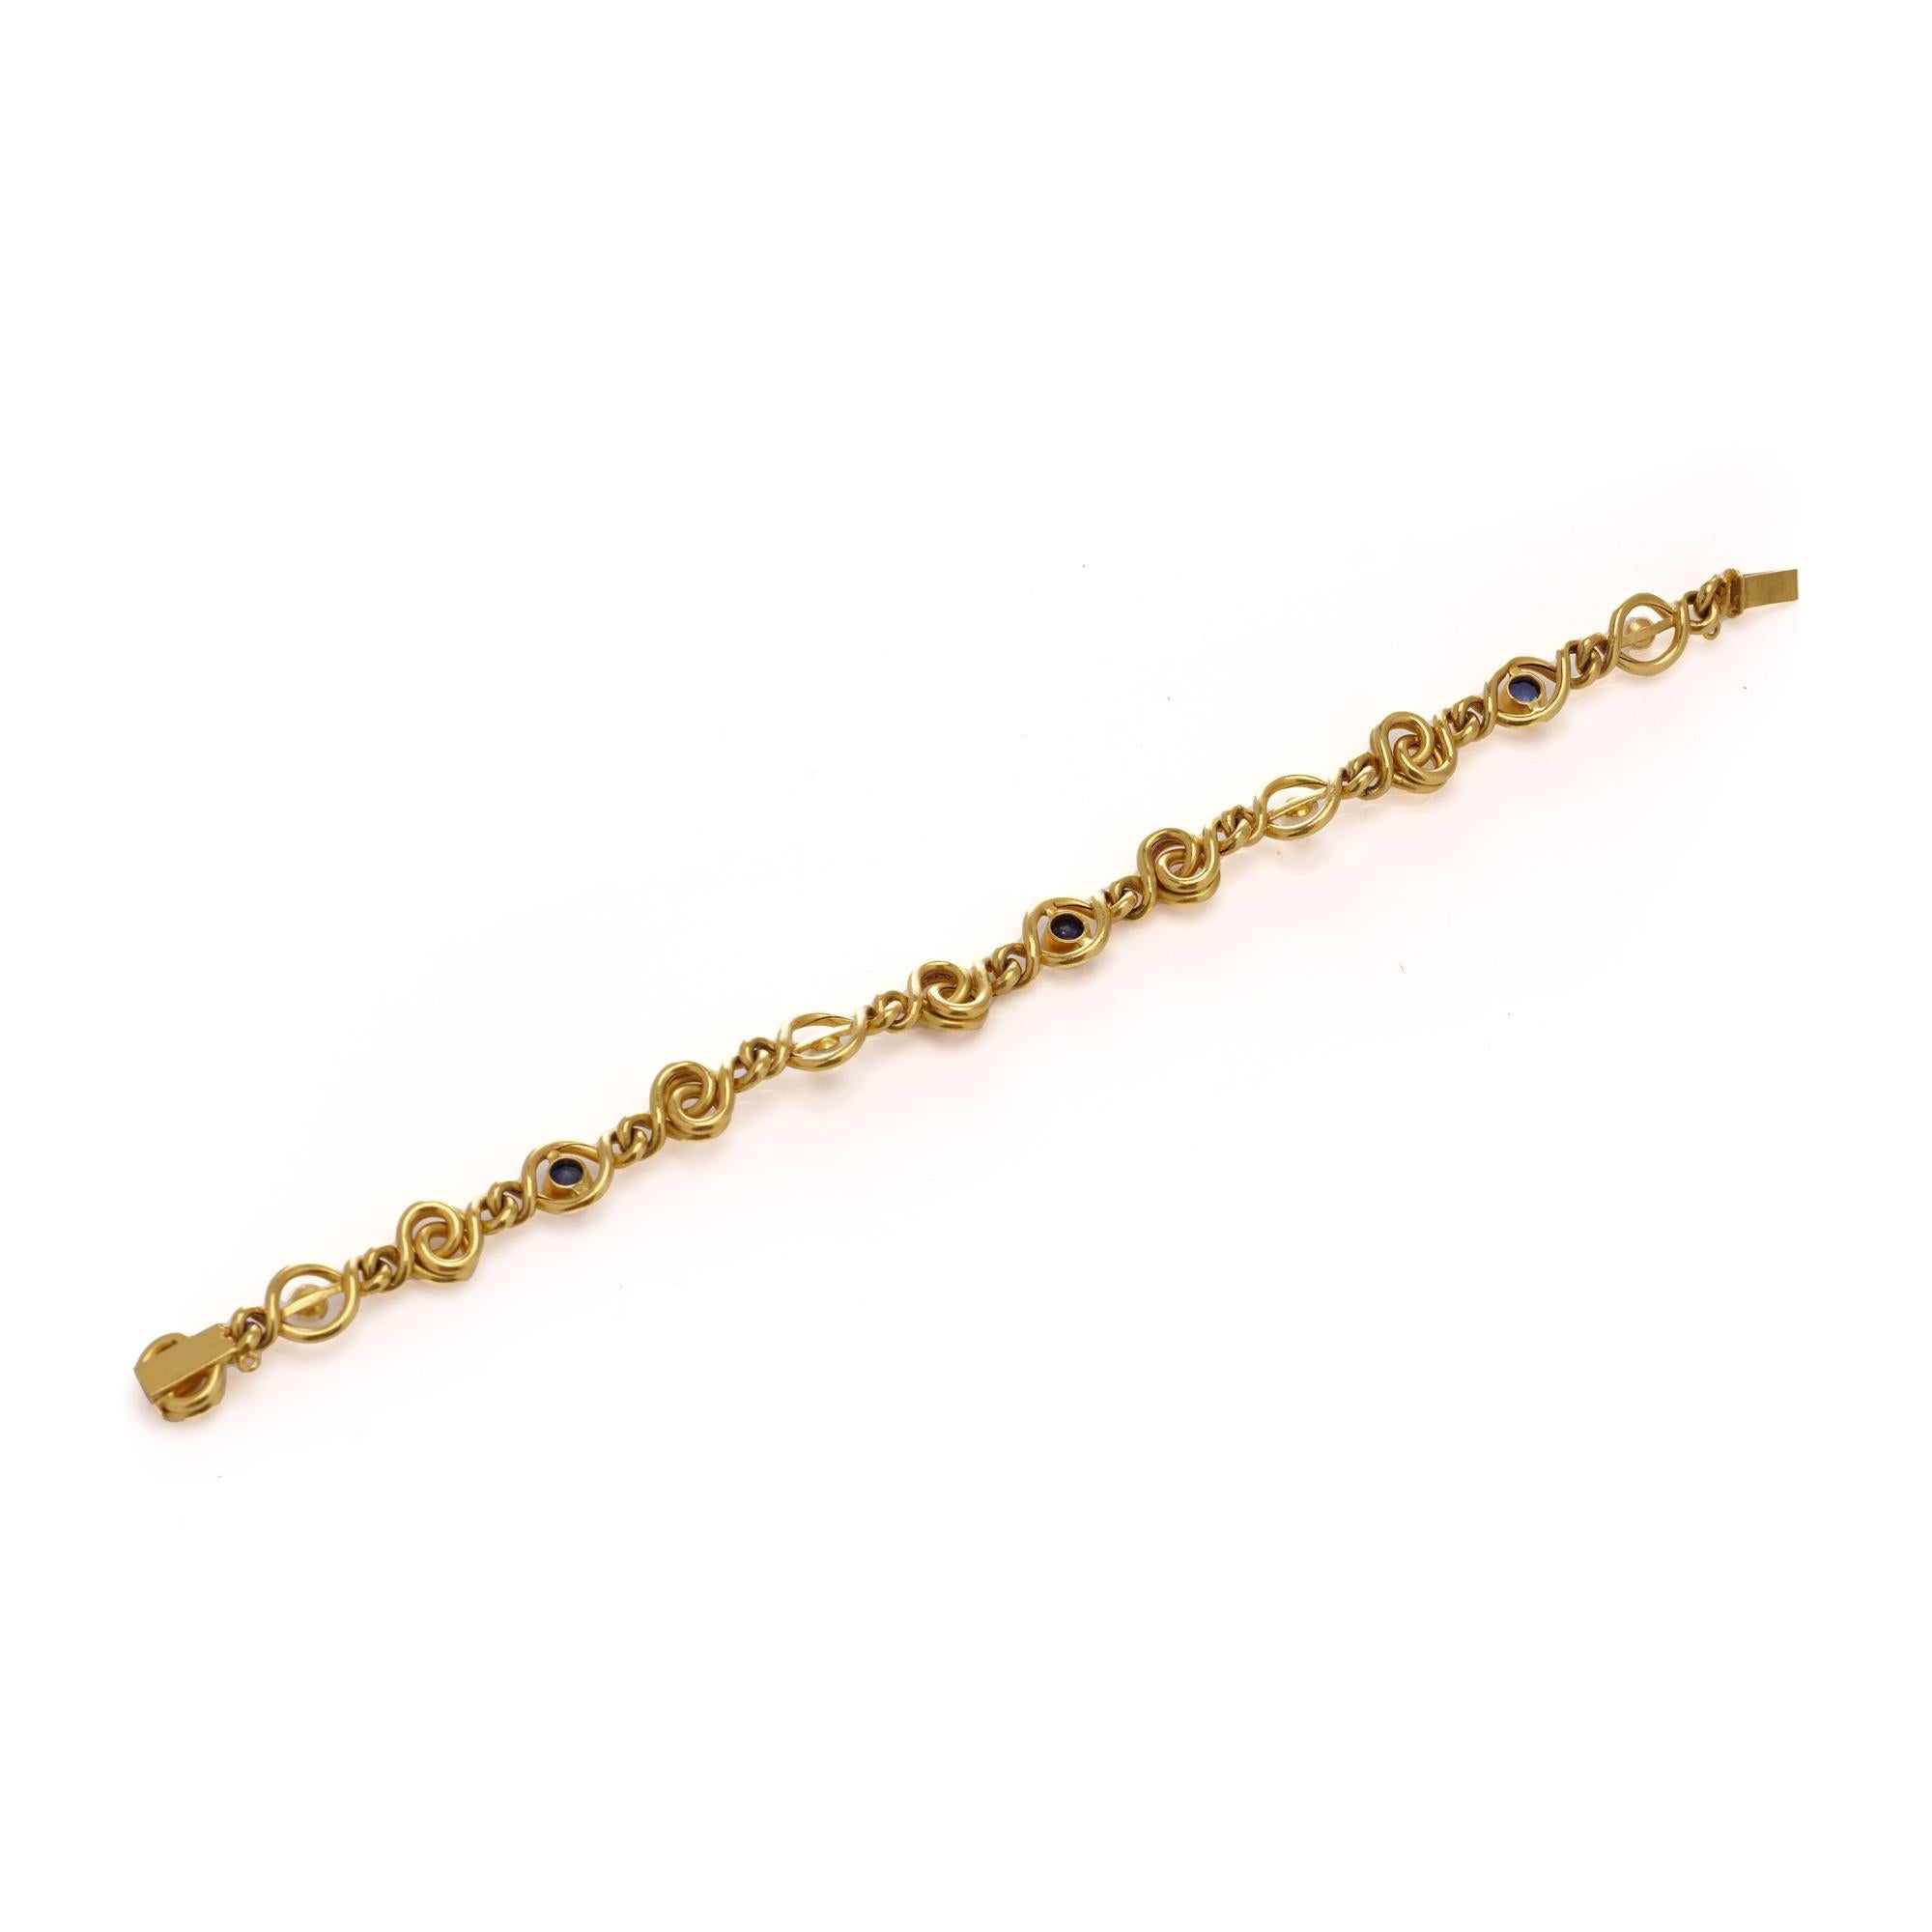 Laissez-vous séduire par l'élégance de cet exquis bracelet ancien français de Jules ROUSSEAU.
Réalisé en luxueux or jaune 24kt, il présente une alternance de maillons fantaisie, de perles naturelles lustrées et d'éblouissants saphirs bleus.
Fabriqué